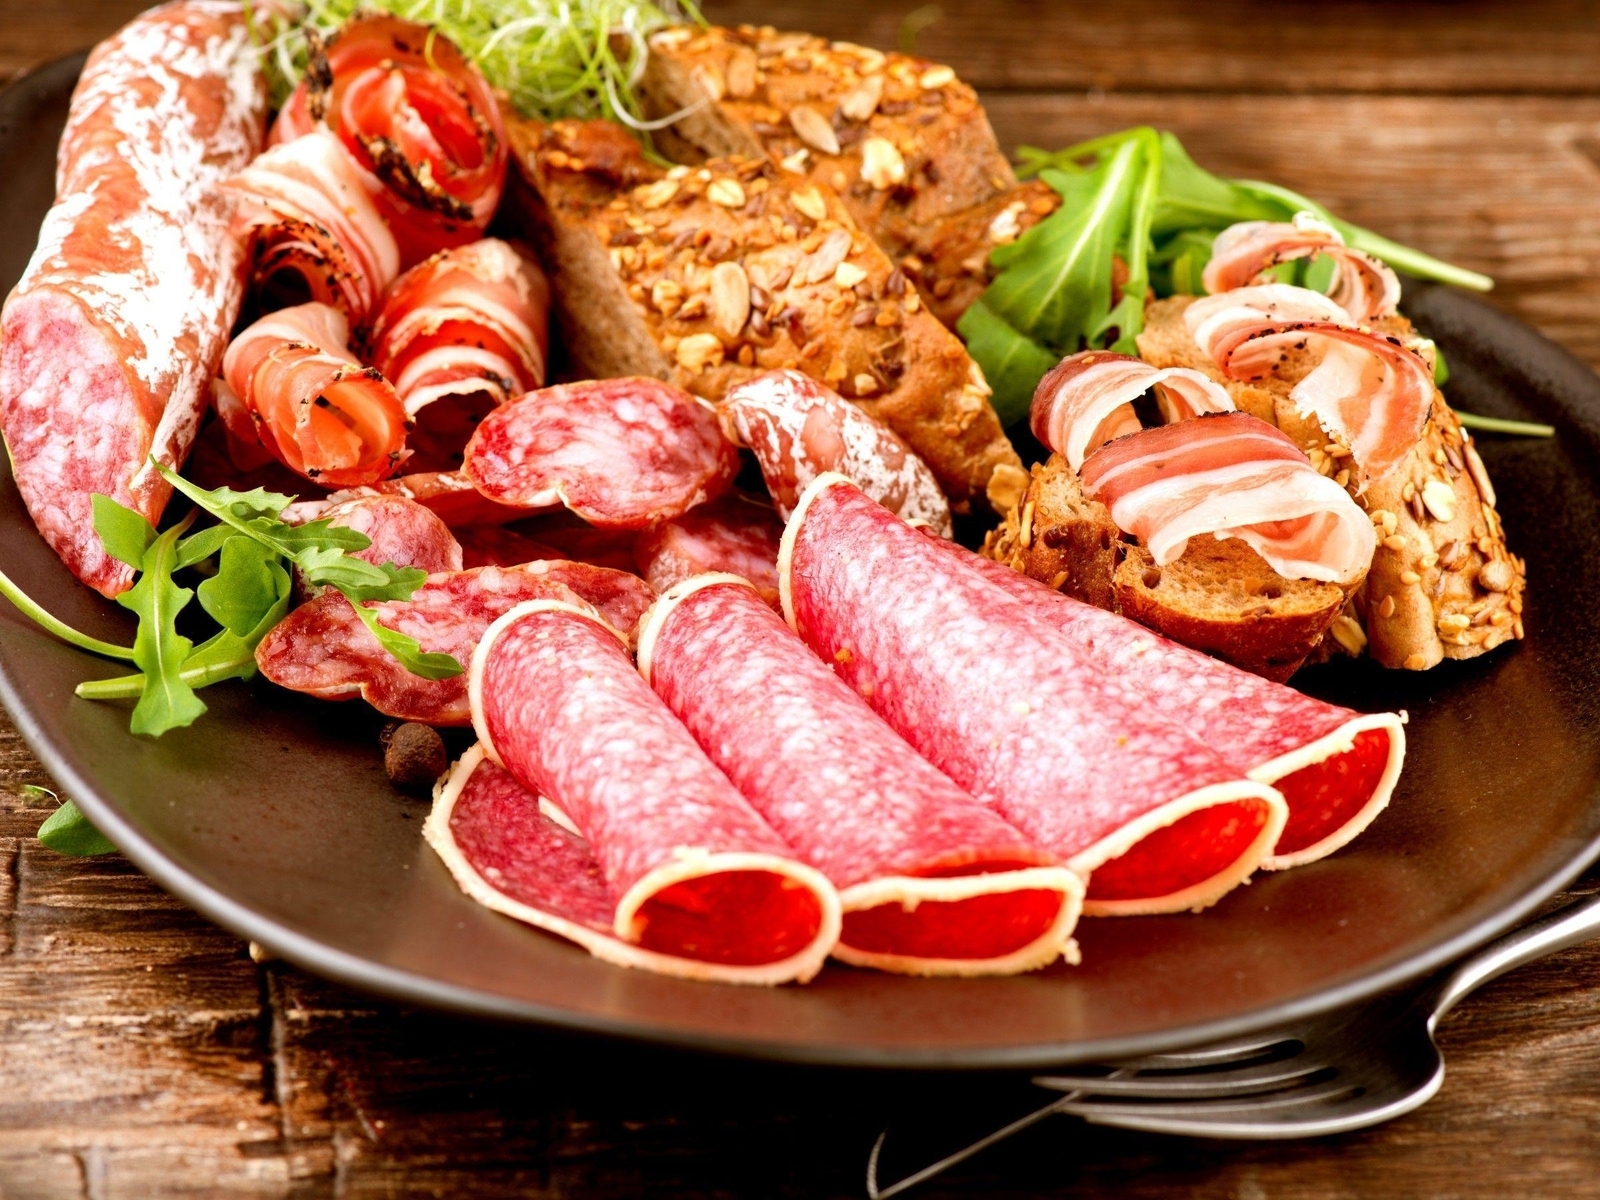 Image: Meats, meat, sausage, salami, loaf, plate, fork